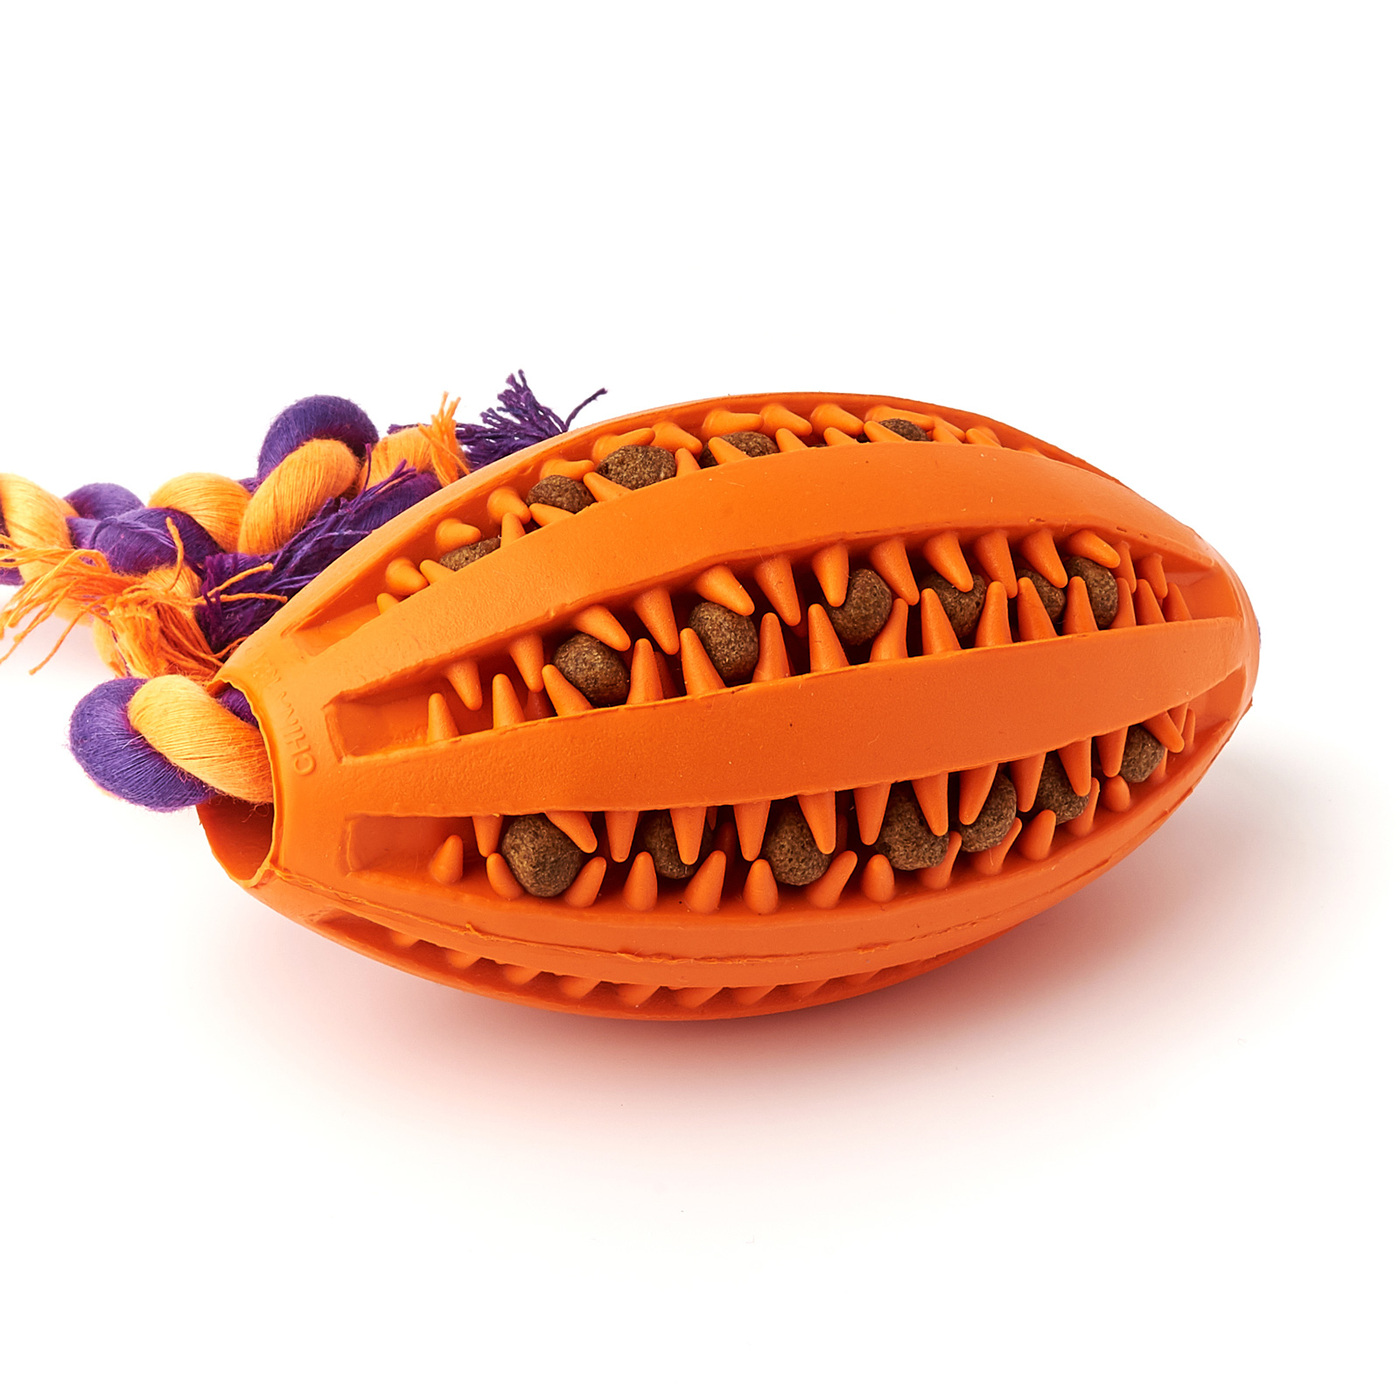 Жевательная игрушка для собак, регби мяч с канатом «Чистые Клыки», длина мяча 11 см, длина каната 30 см